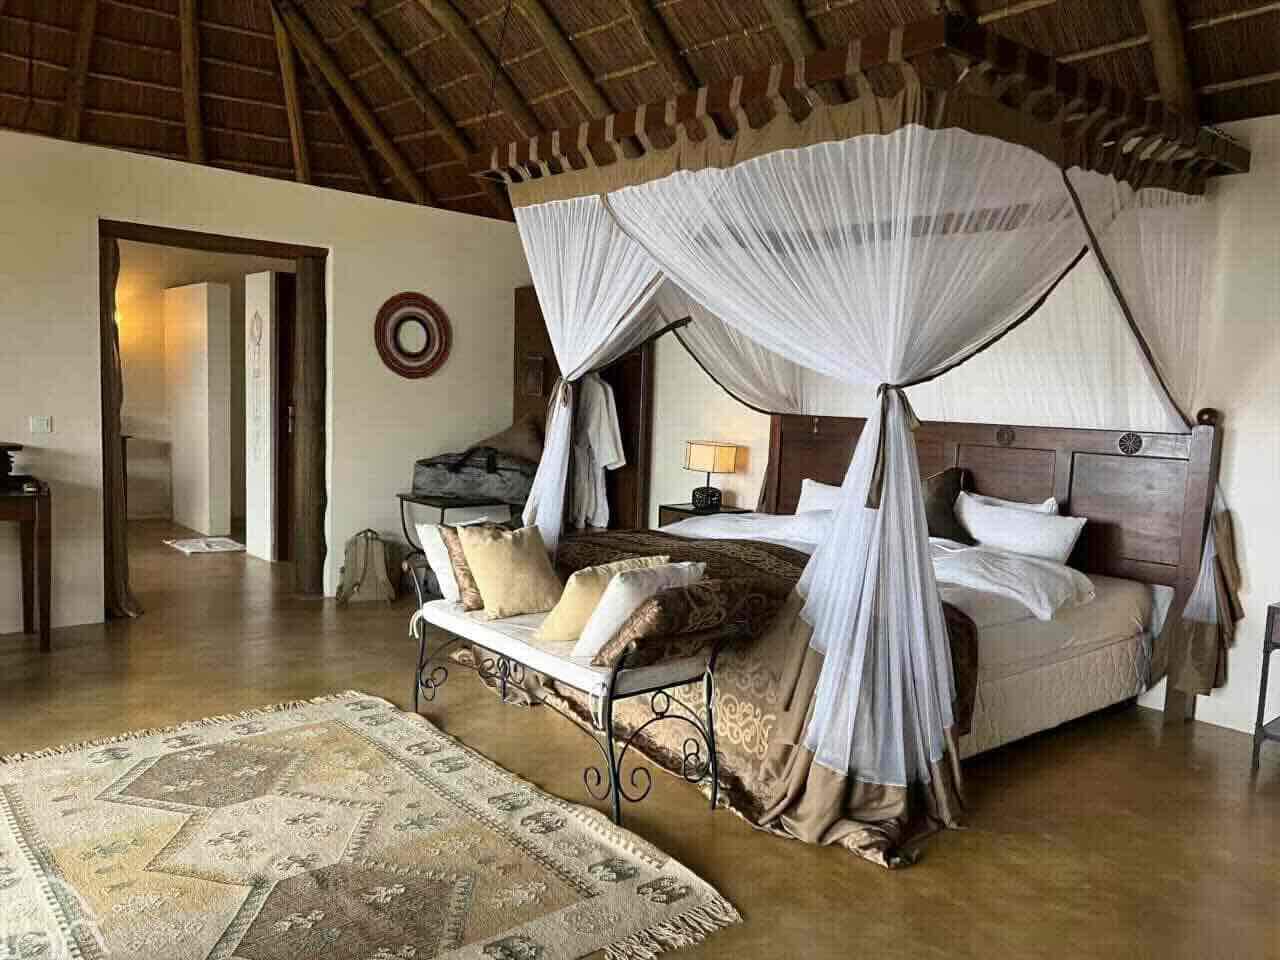 Huwelijksreis Tanzania. Mooi opgemaakt bed met klamboe in een accommodatie in de regio Manayara Tanzania